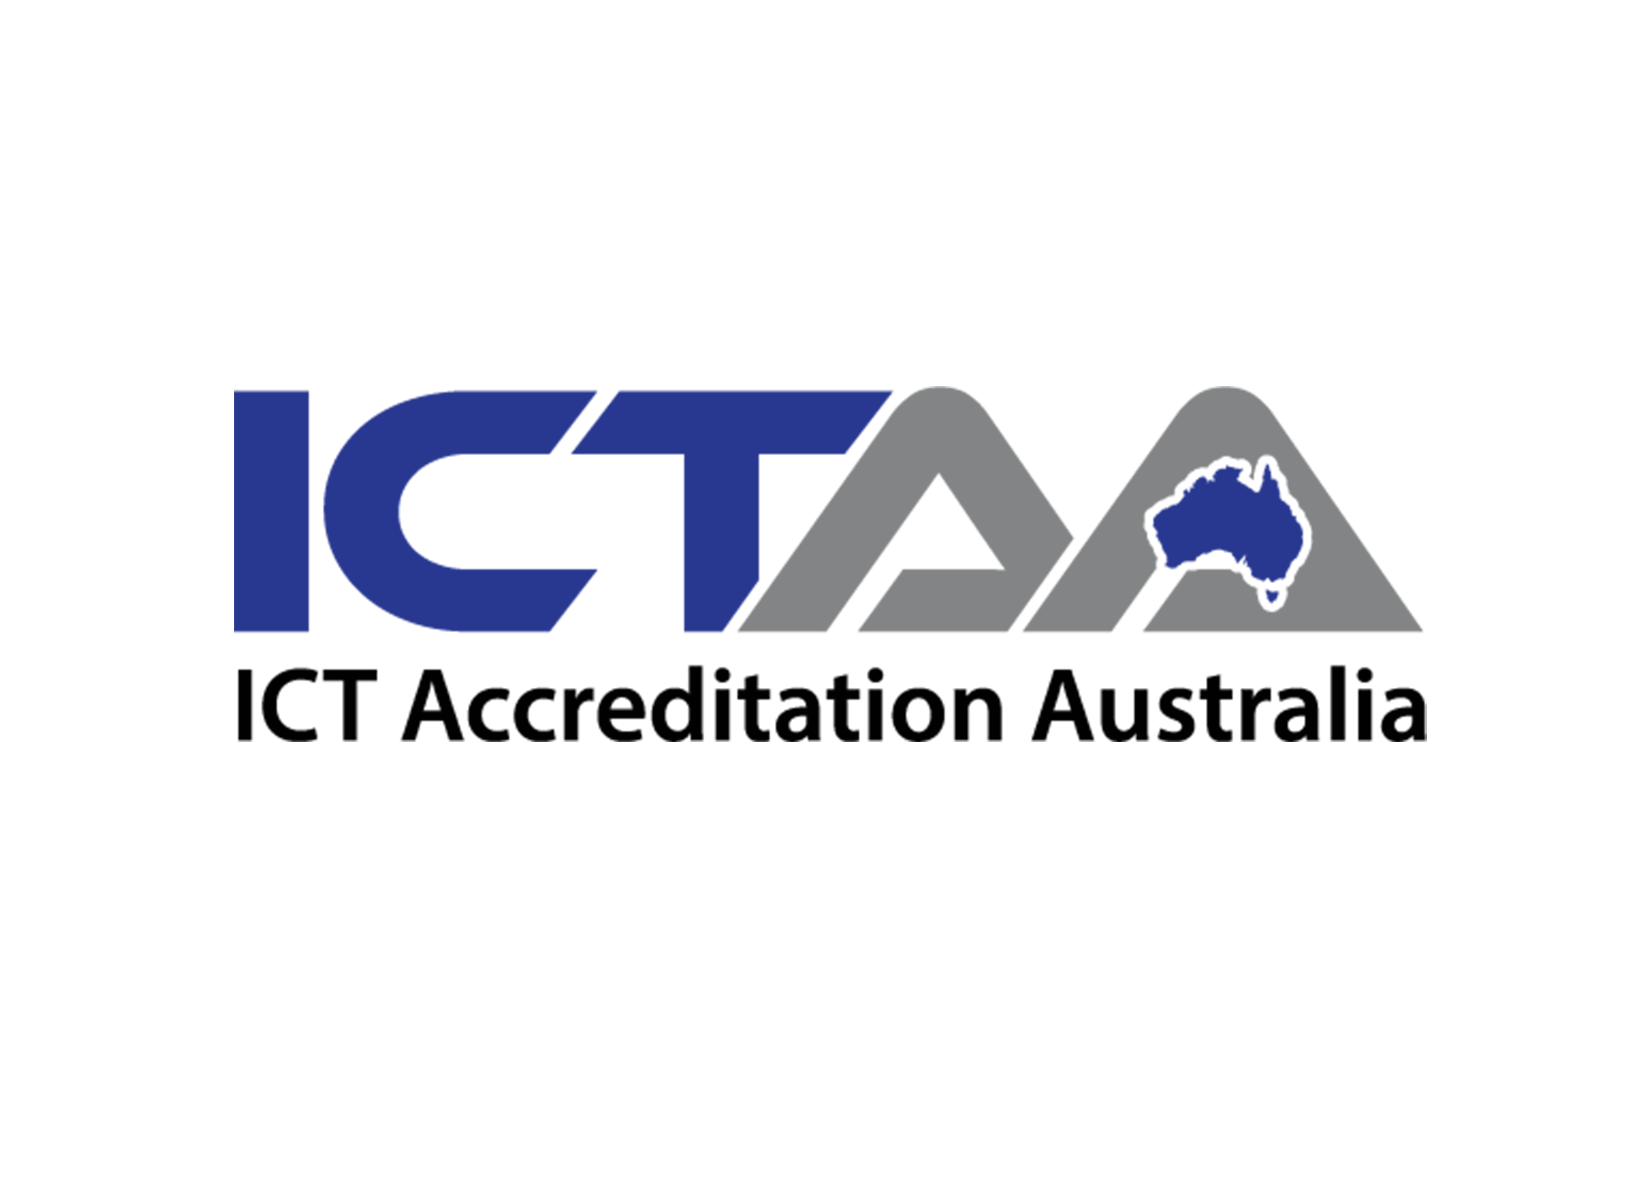 ICTAA Partner - Megabits.com.au